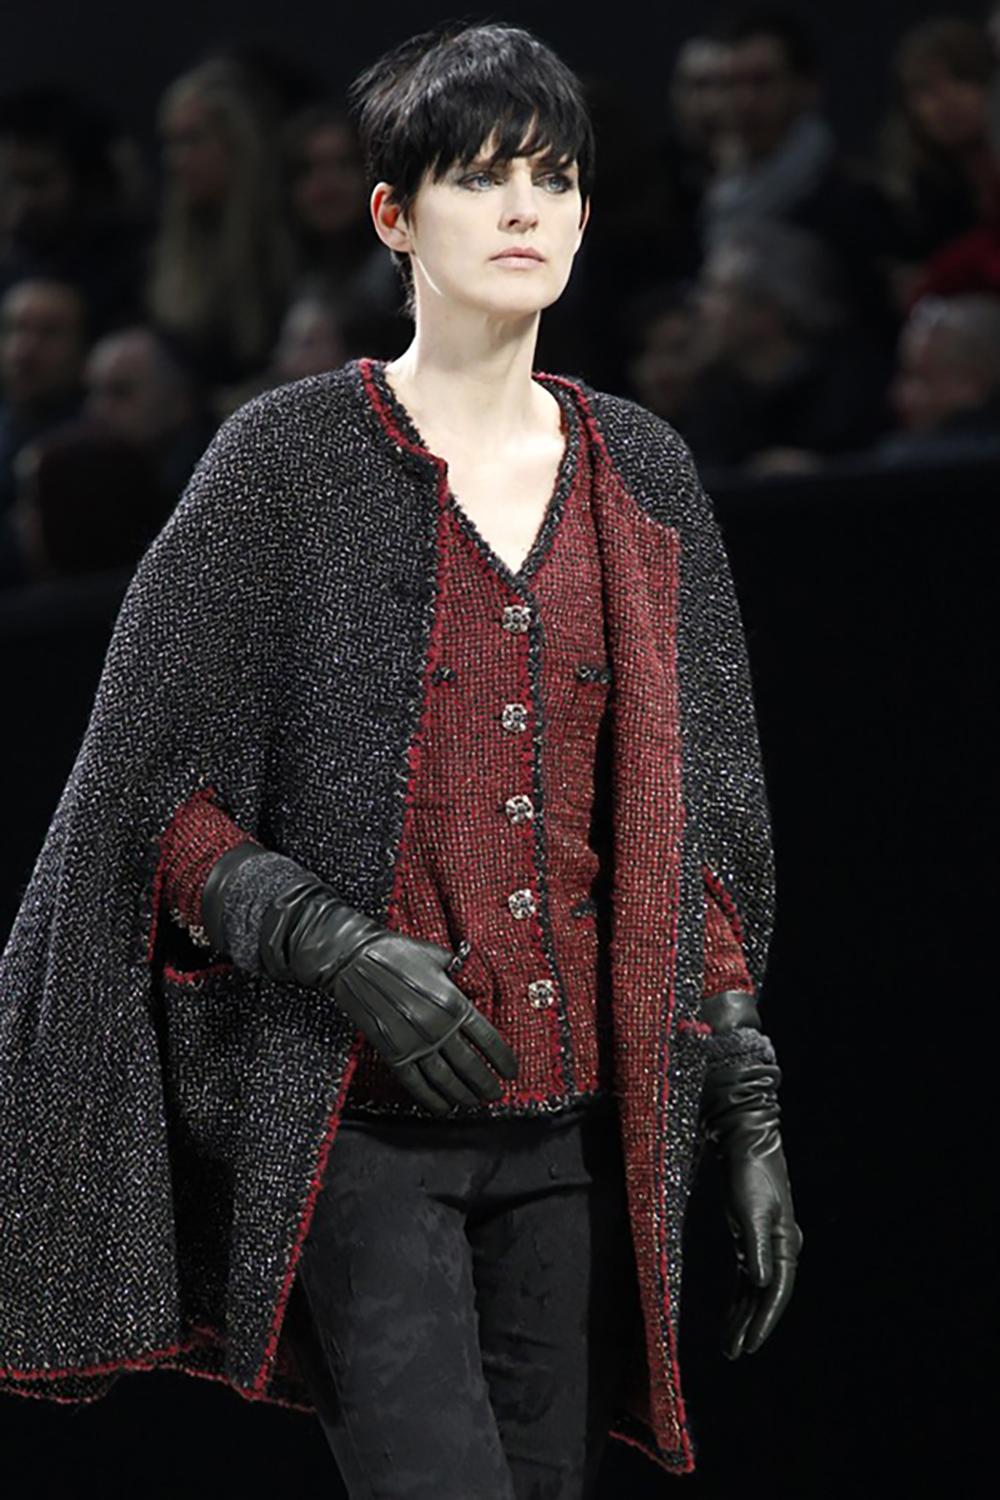 L'une des pièces les plus emblématiques de Chanel : la veste en tweed noir avec des boutons CC Gripoix, pièce maîtresse, de la Collectional S 2011 de Karl Lagerfeld.
Prix boutique supérieur à 9 000$. Taille 40 FR. N'a jamais été porté.
- en tweed